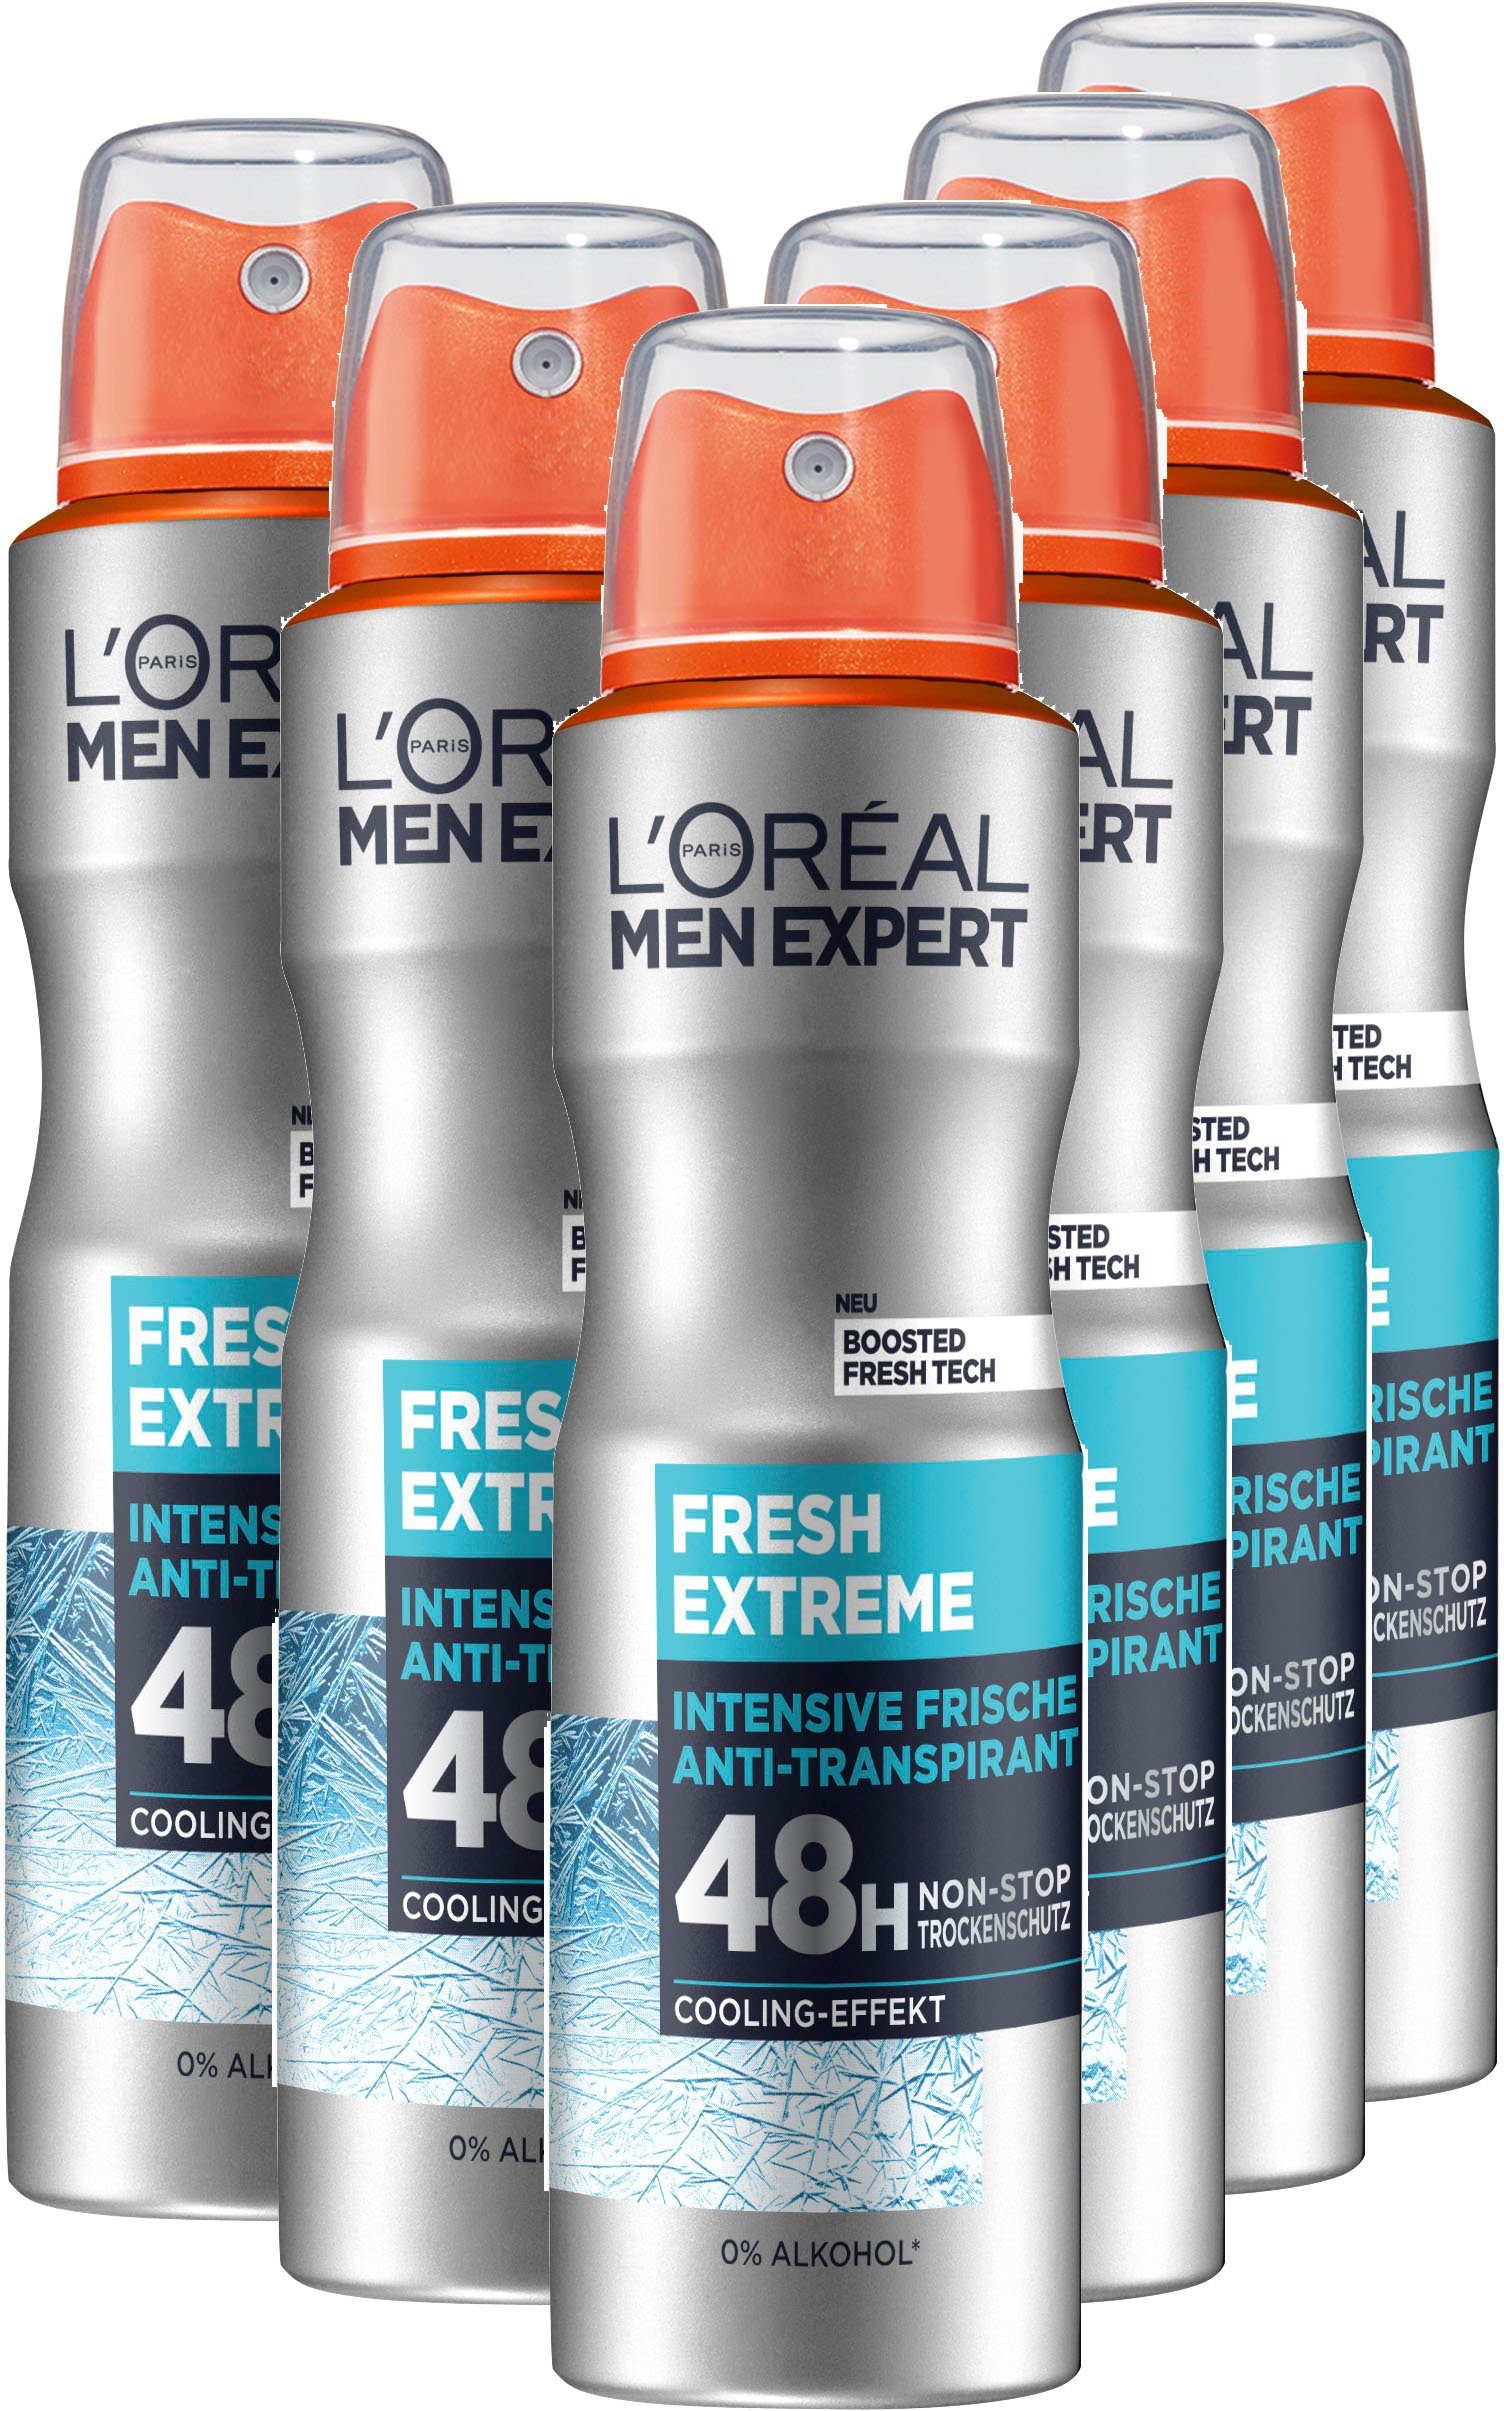 Fresh Spray PARIS L'ORÉAL MEN Extreme, 6-tlg. Deo-Spray Deo Packung, EXPERT